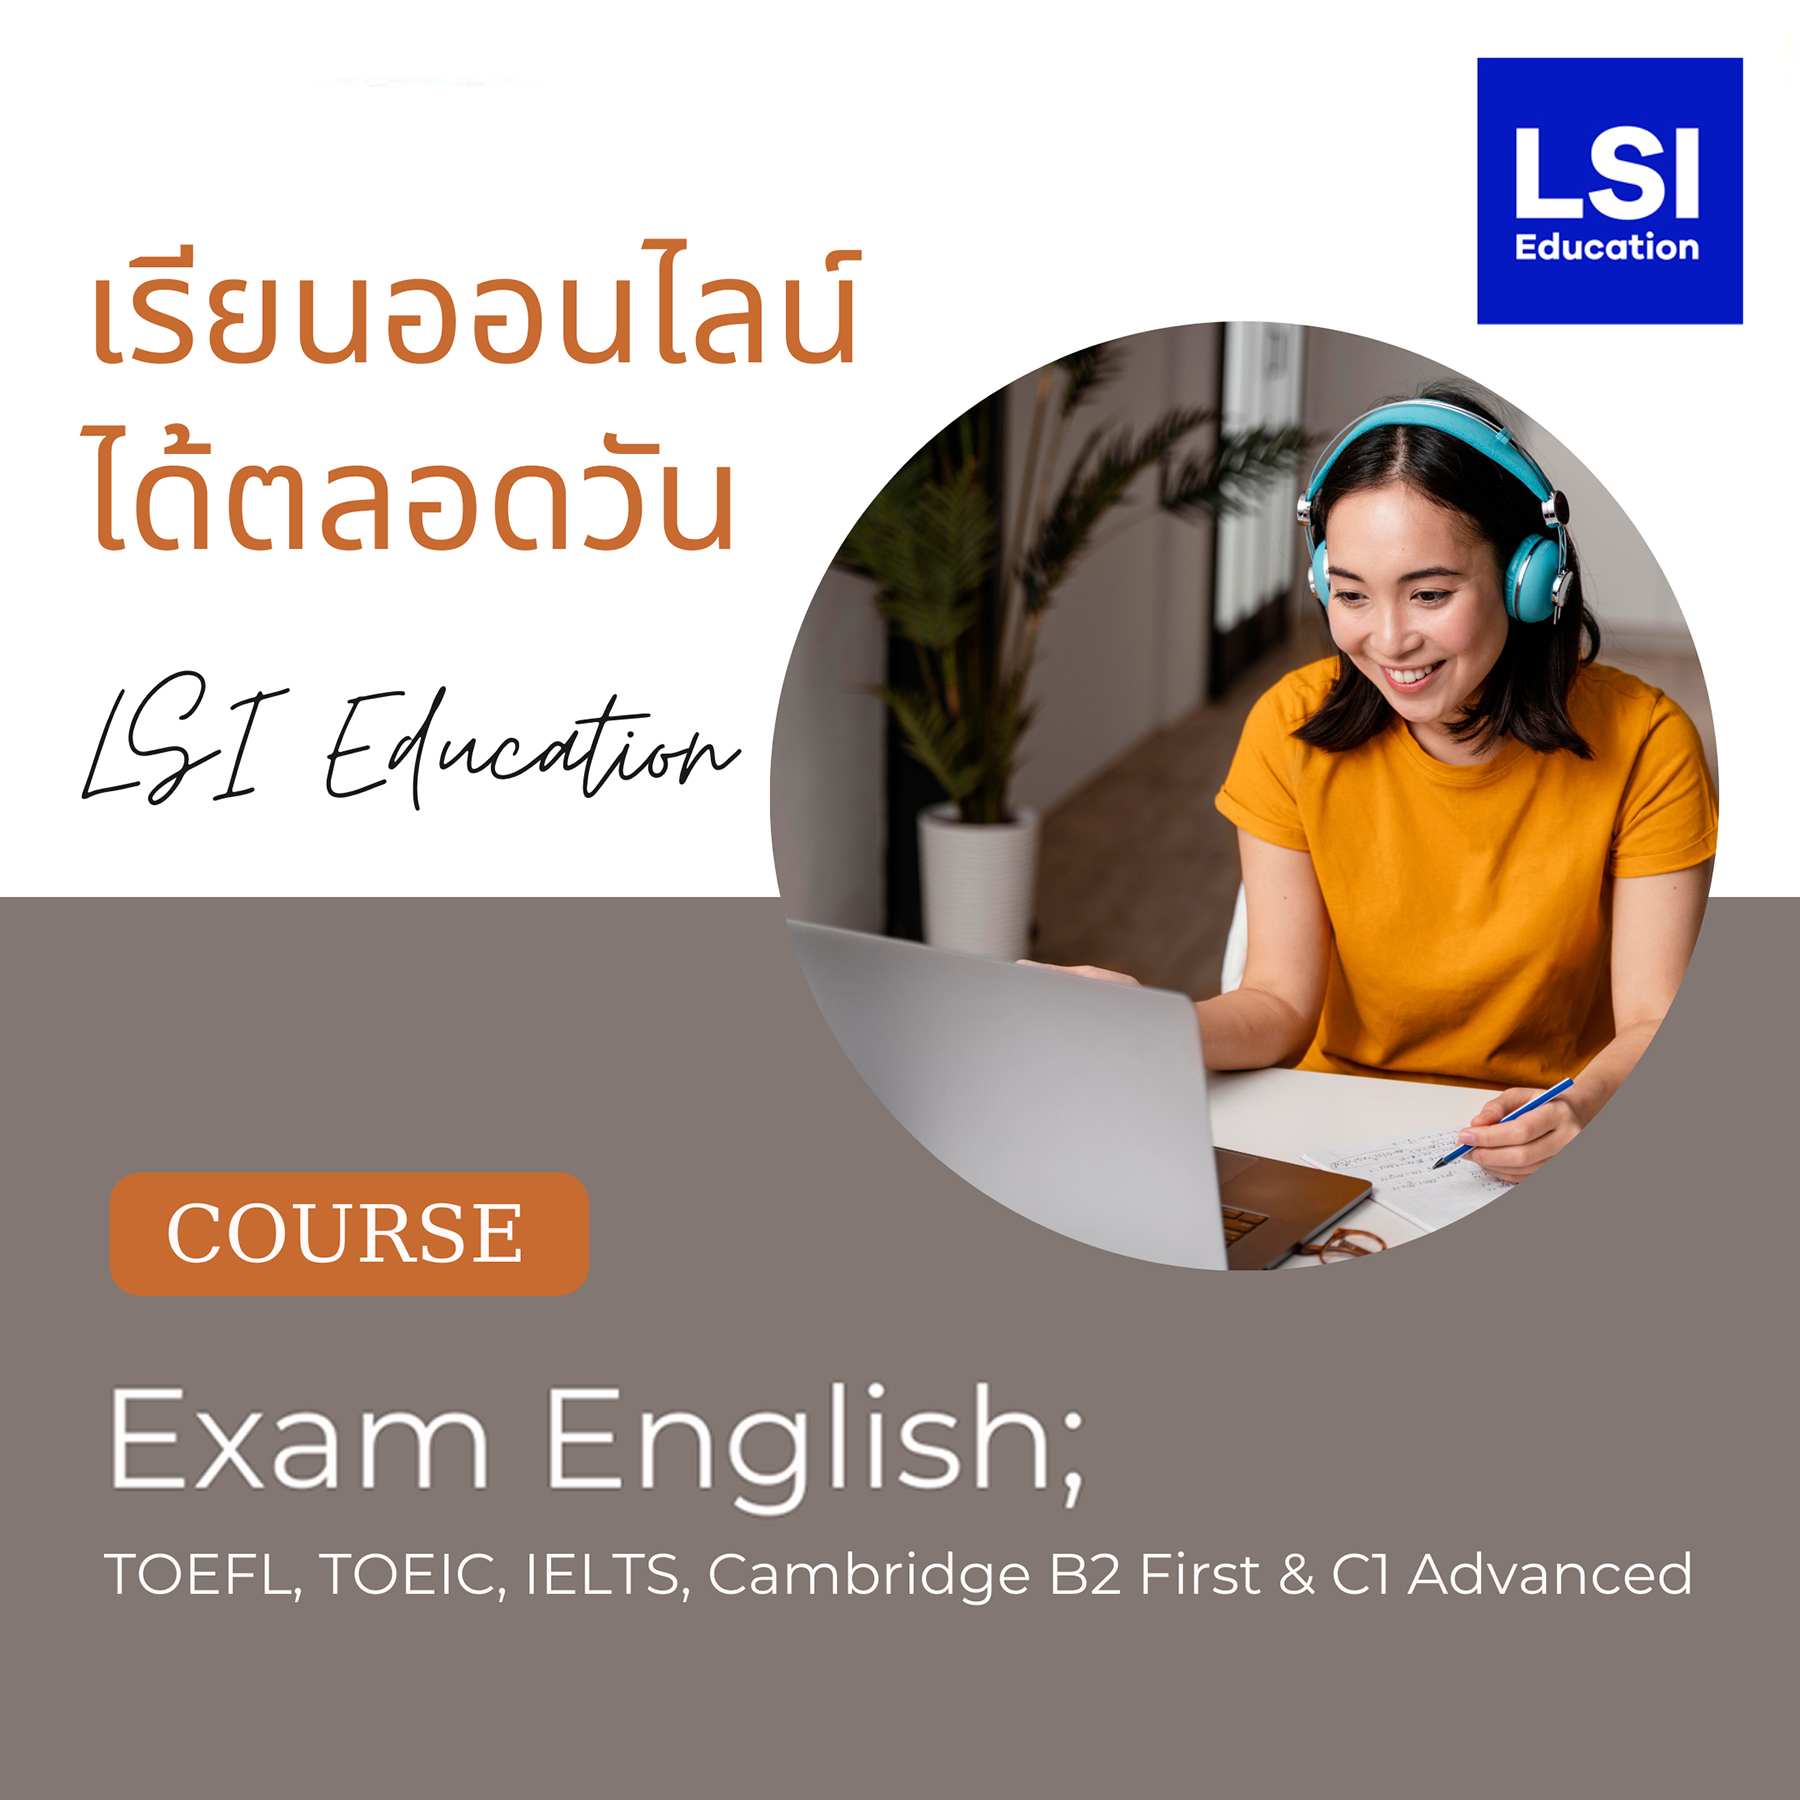 เรียนภาษาอังกฤษออนไลน์ คอร์ส Exam English จาก LSI